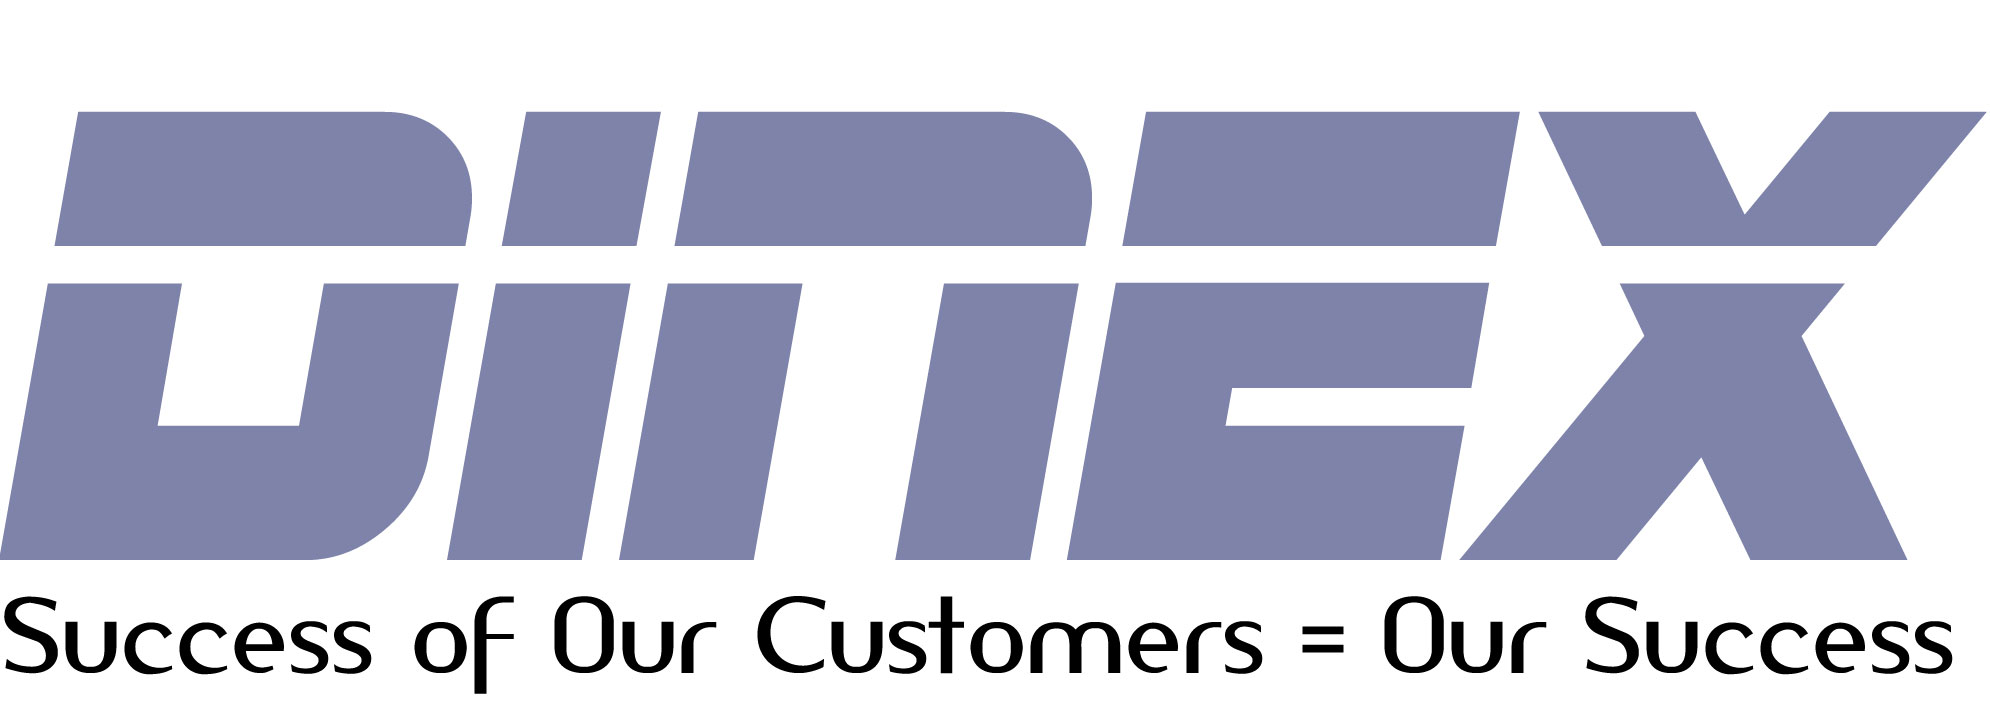 Nutek Logo